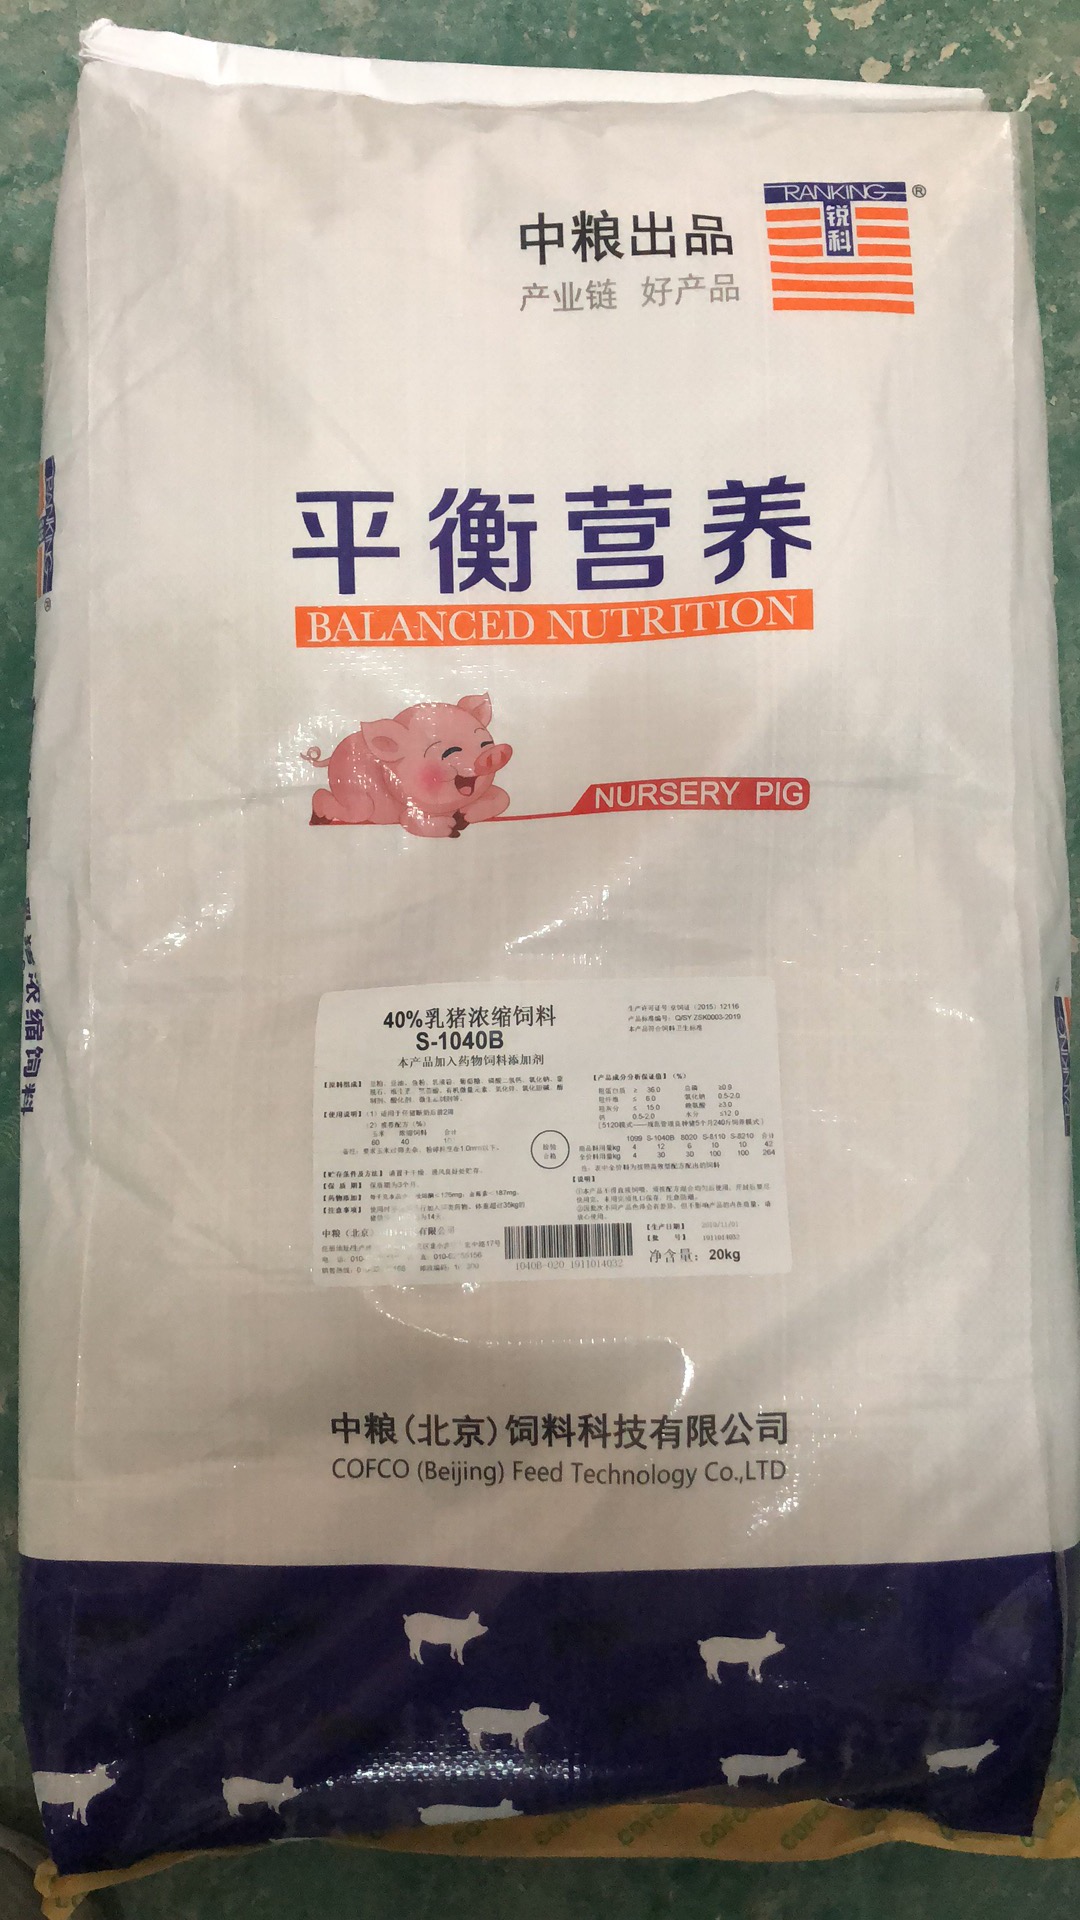 中粮40%乳猪浓缩饲料产品编号S-1040B